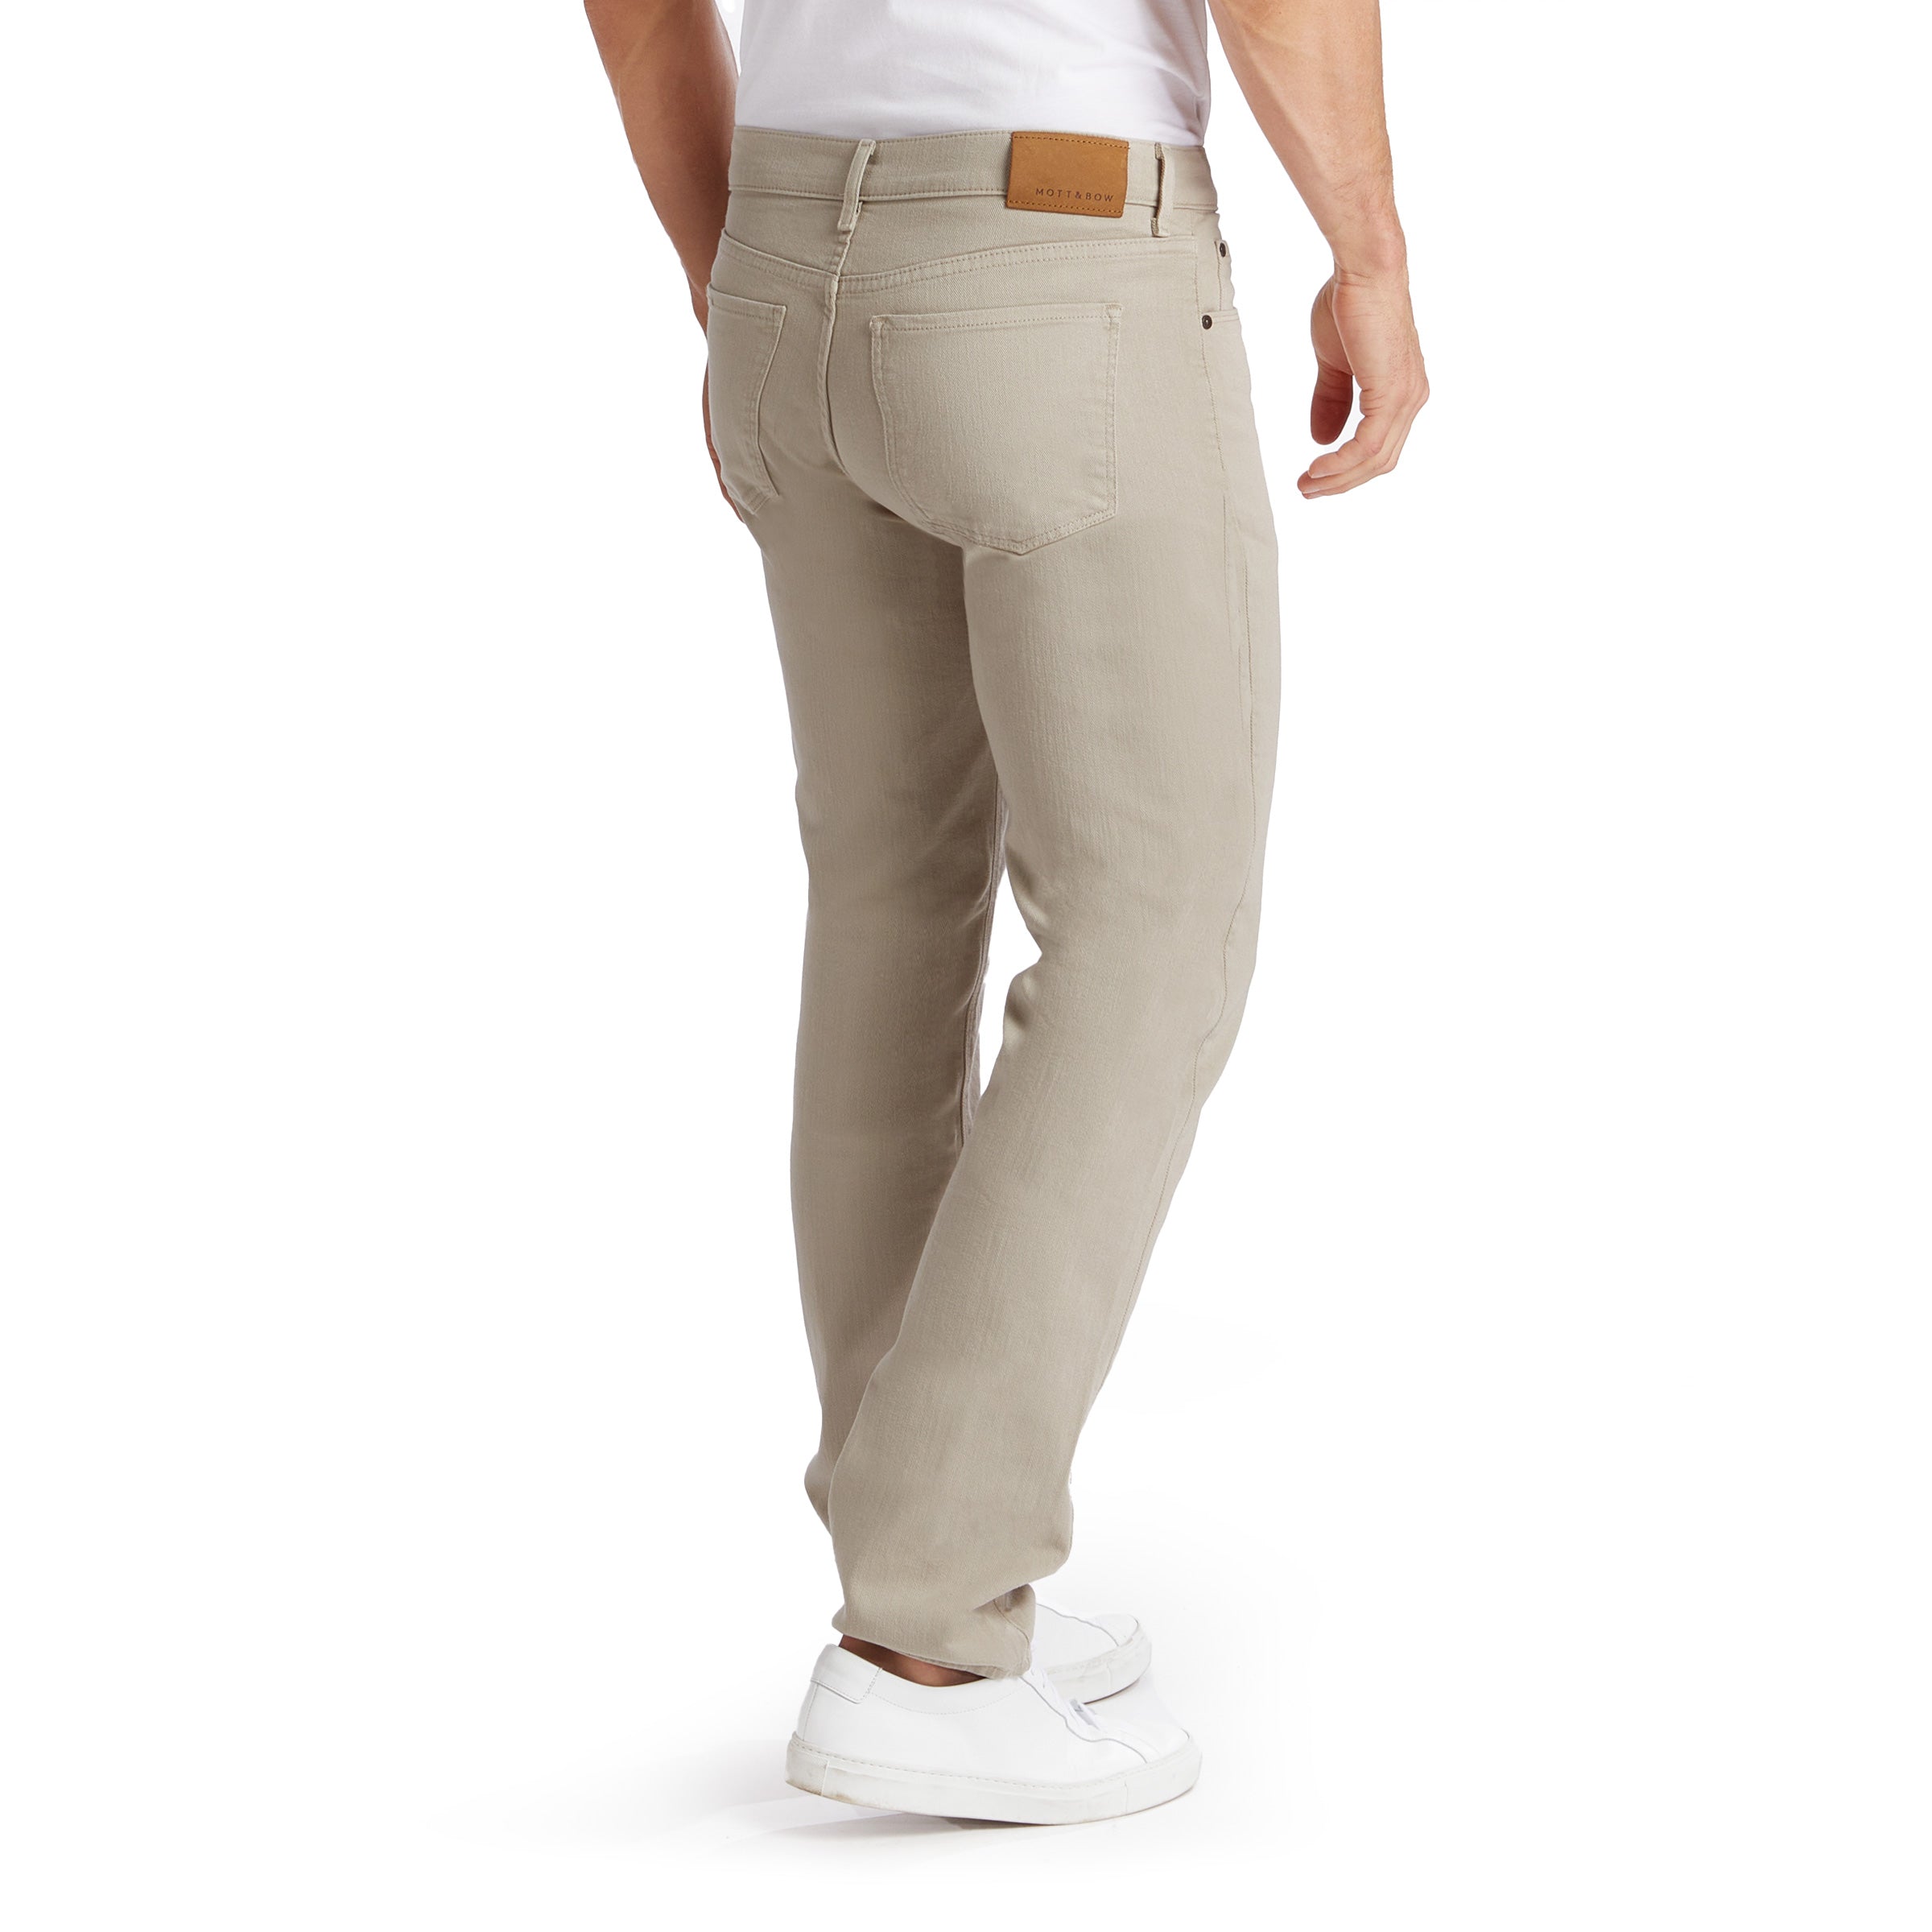 CCS Straight Fit Chino Pants - Light Khaki